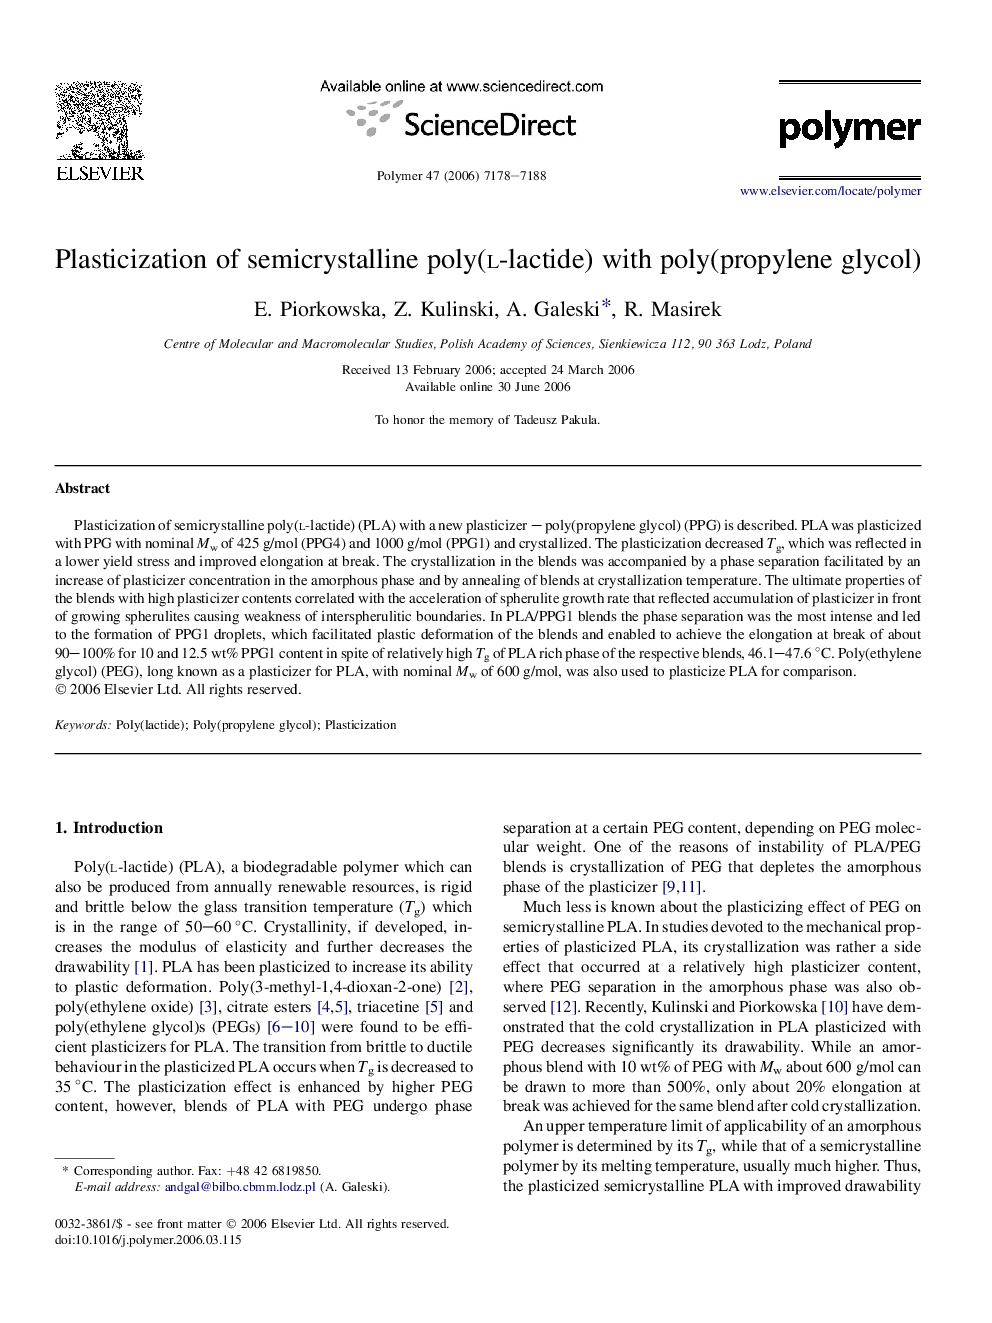 Plasticization of semicrystalline poly(l-lactide) with poly(propylene glycol)